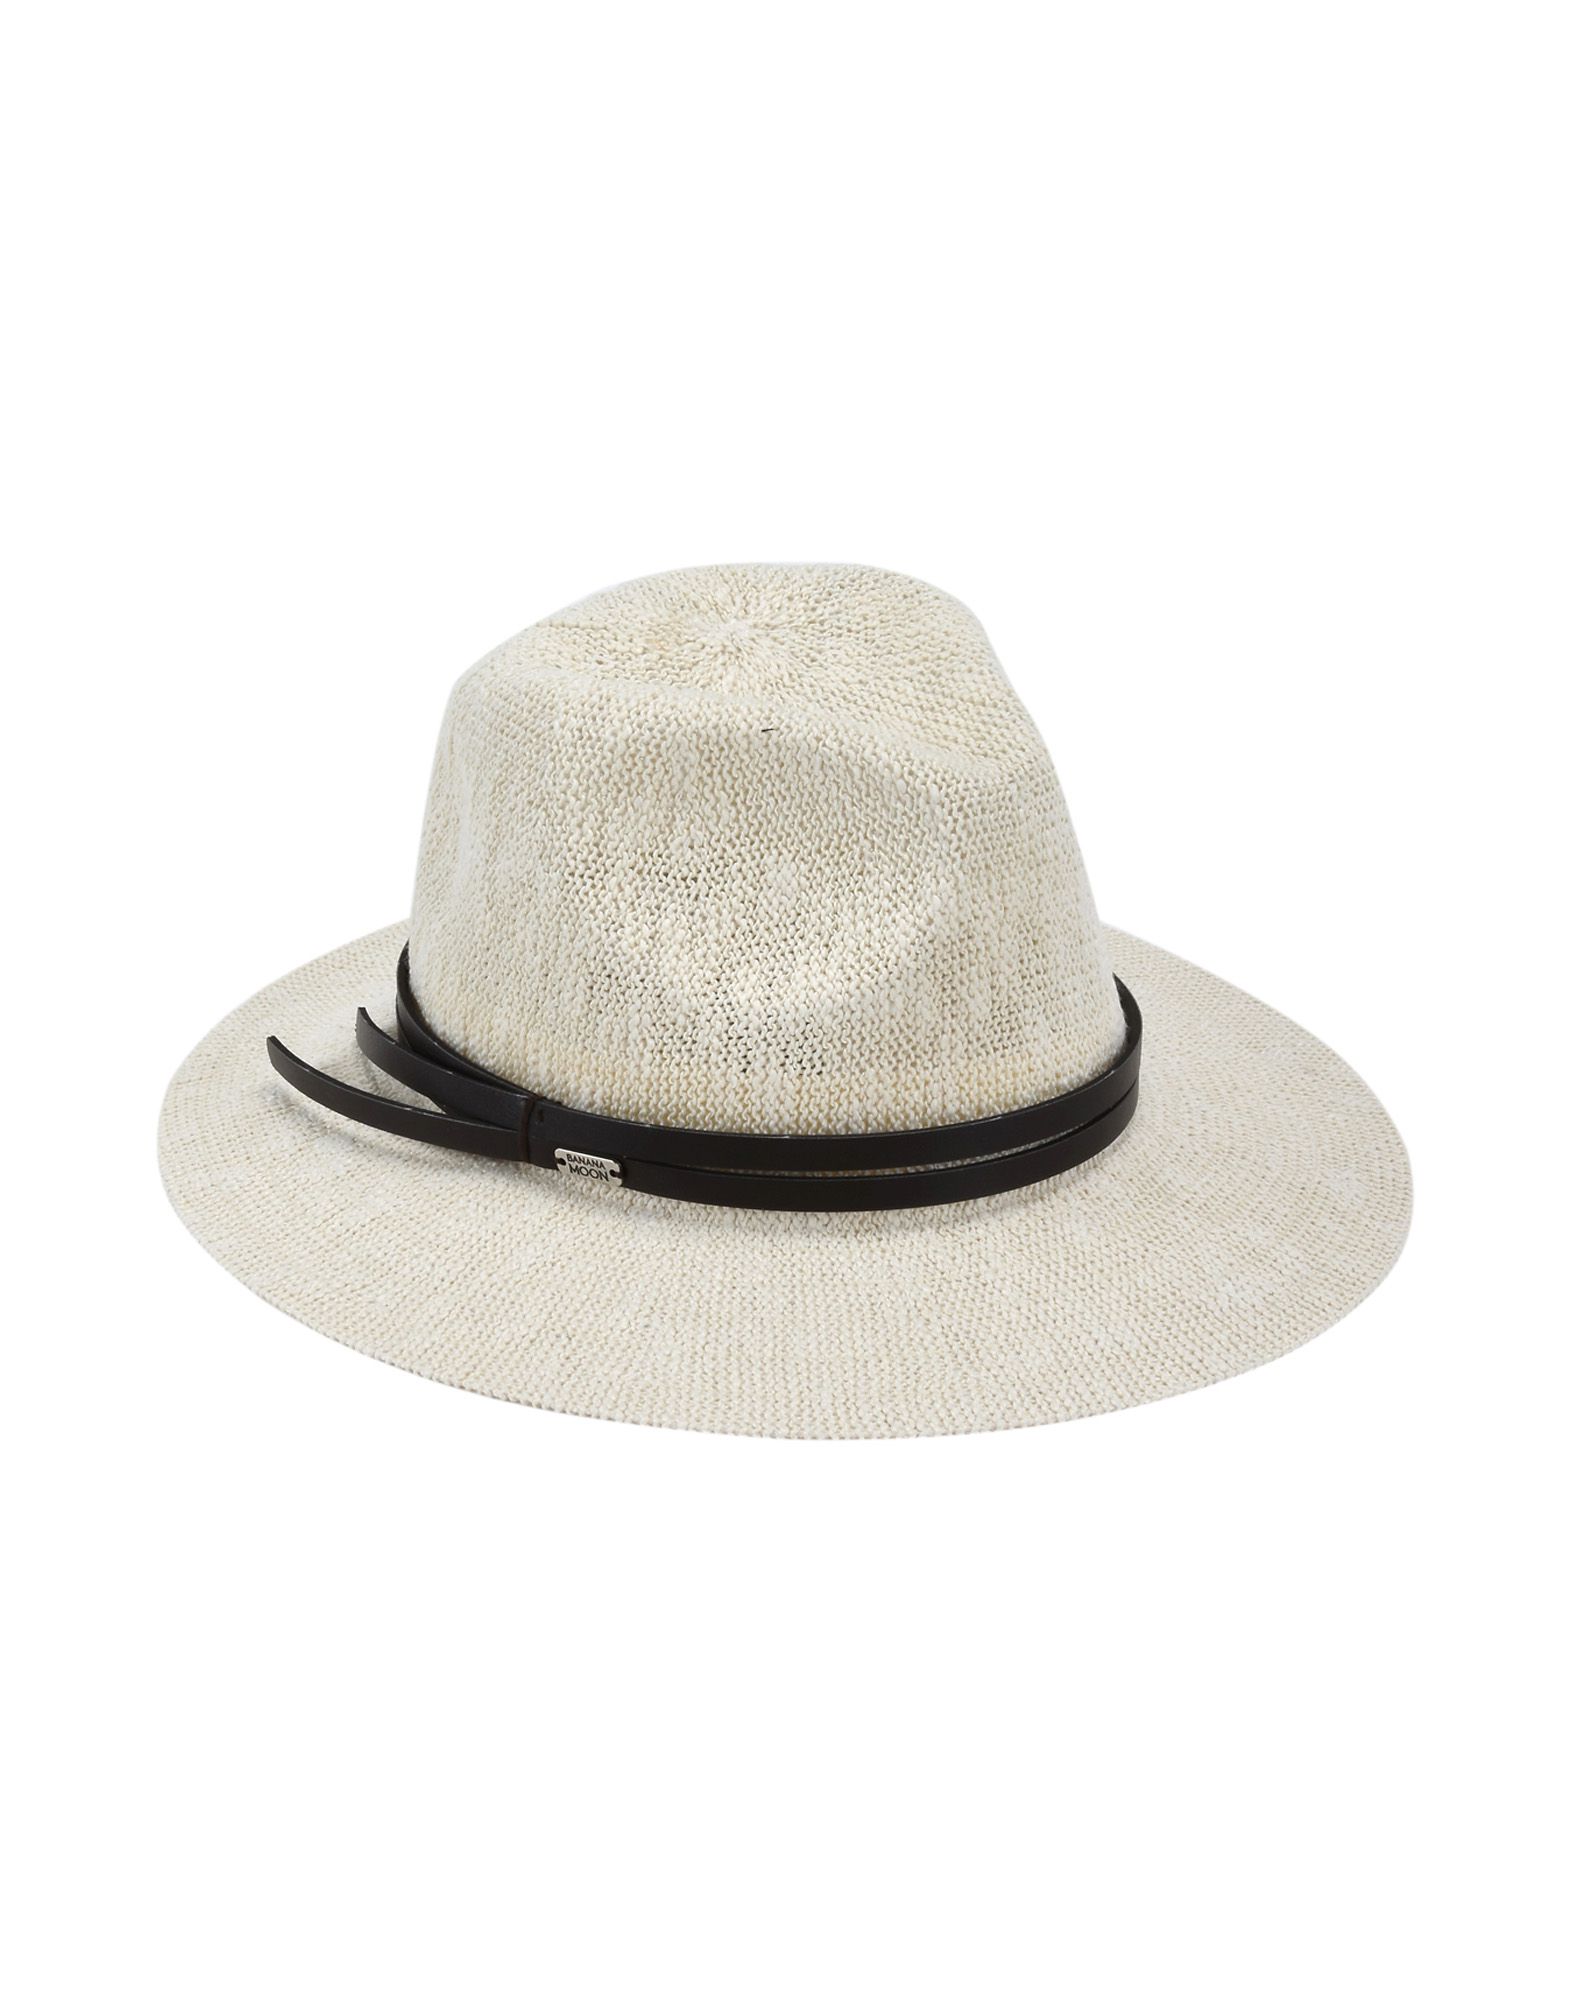 《送料無料》BANANA MOON レディース 帽子 ホワイト I ポリエステル 100% HATSY